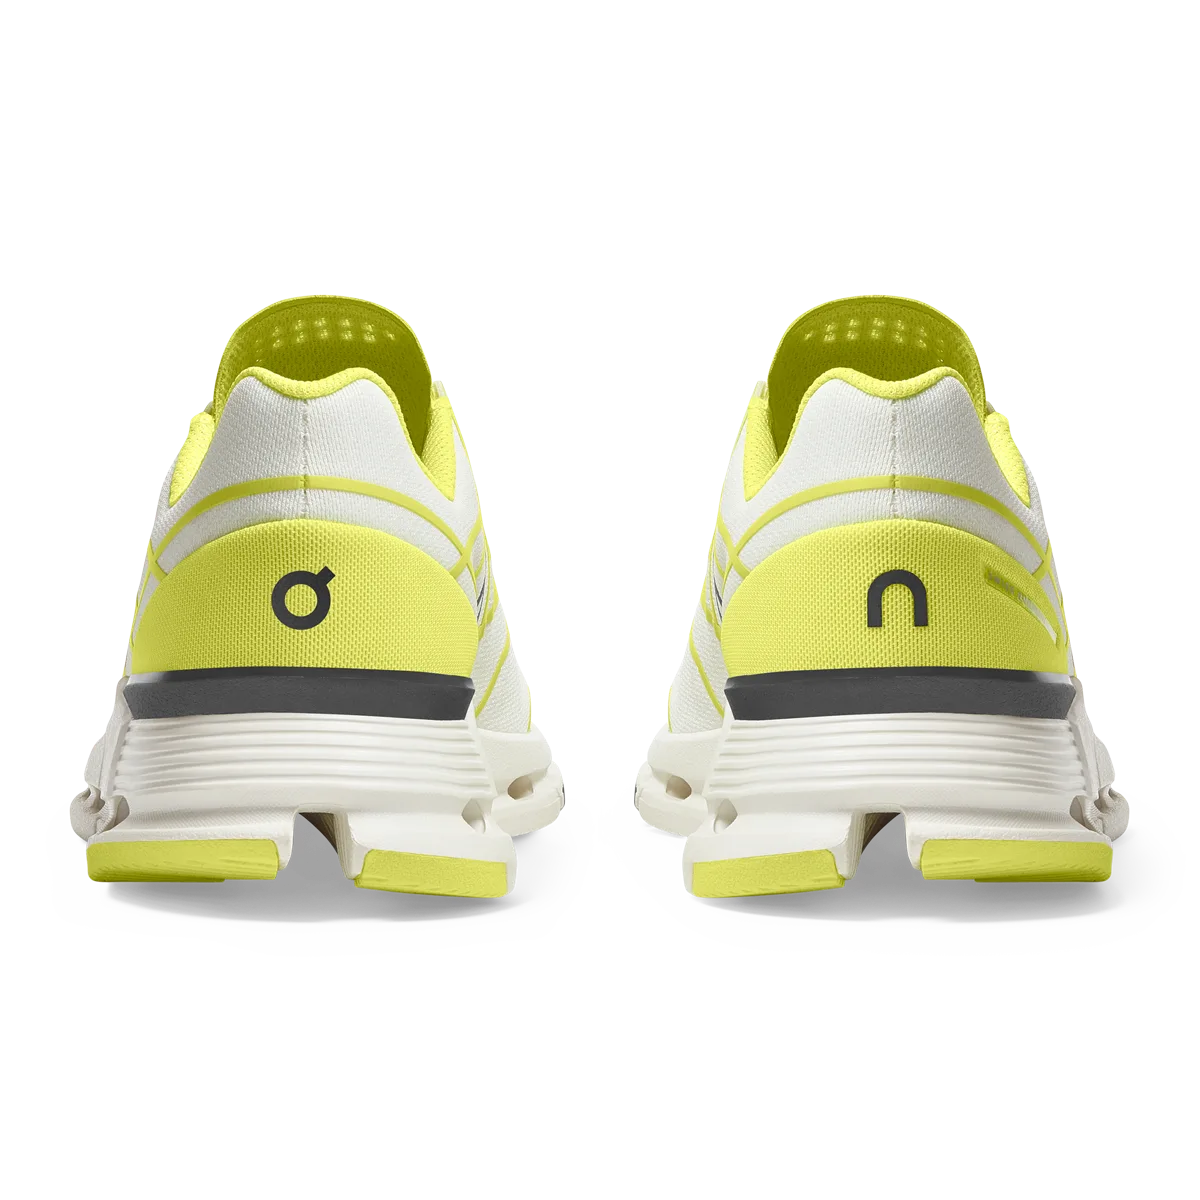 On昂跑首款最具实验性的鞋作Cloudnova Z5将于SKP-S独家限量上市